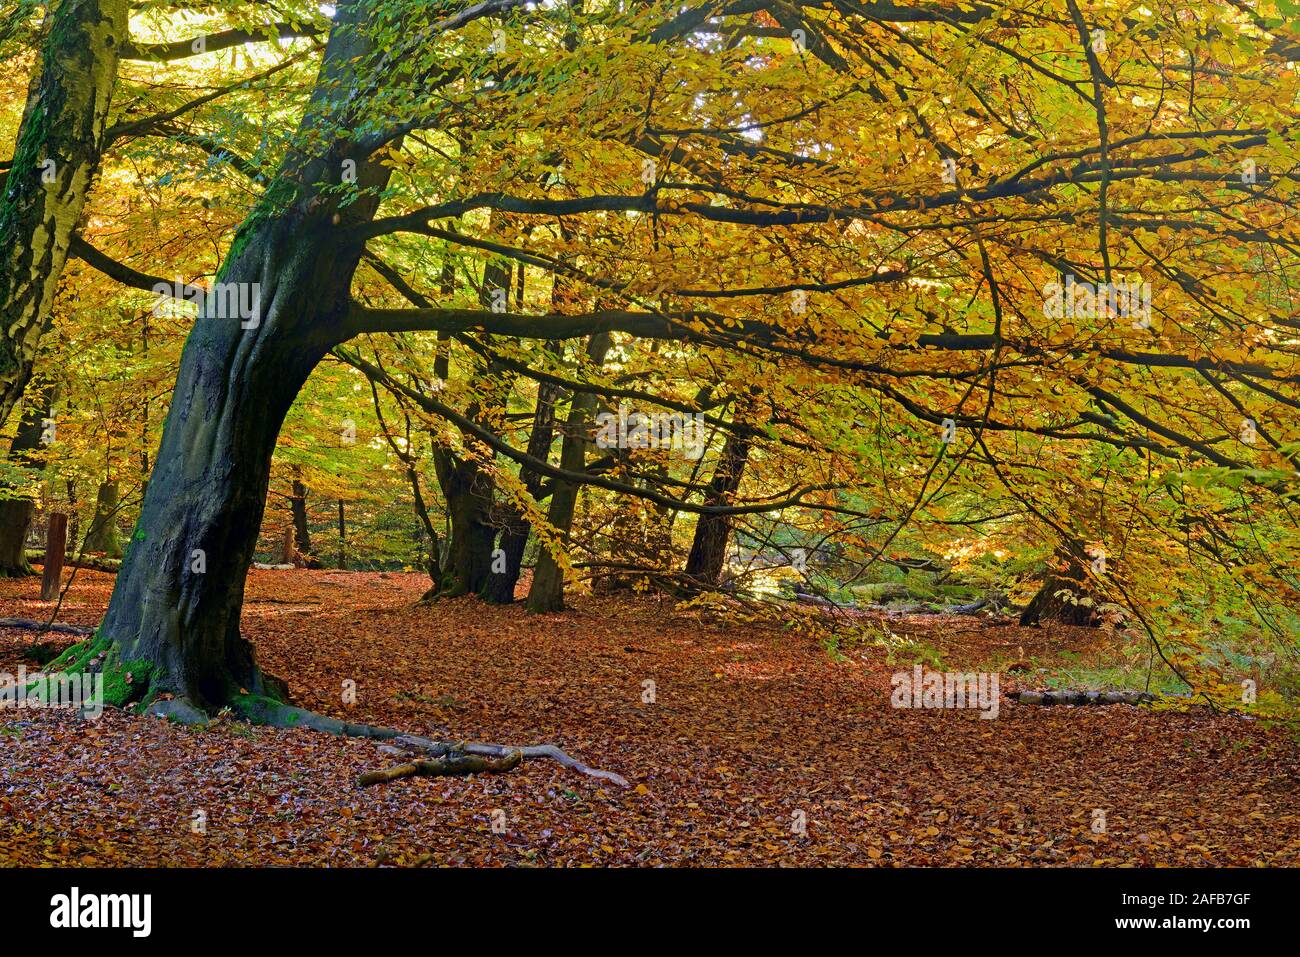 stimmungsvolle, herbstliche Lichtsituation mit Buchen (Fagus) , Urwald Sababurg, Hessen, Deutschland, Europa Stock Photo